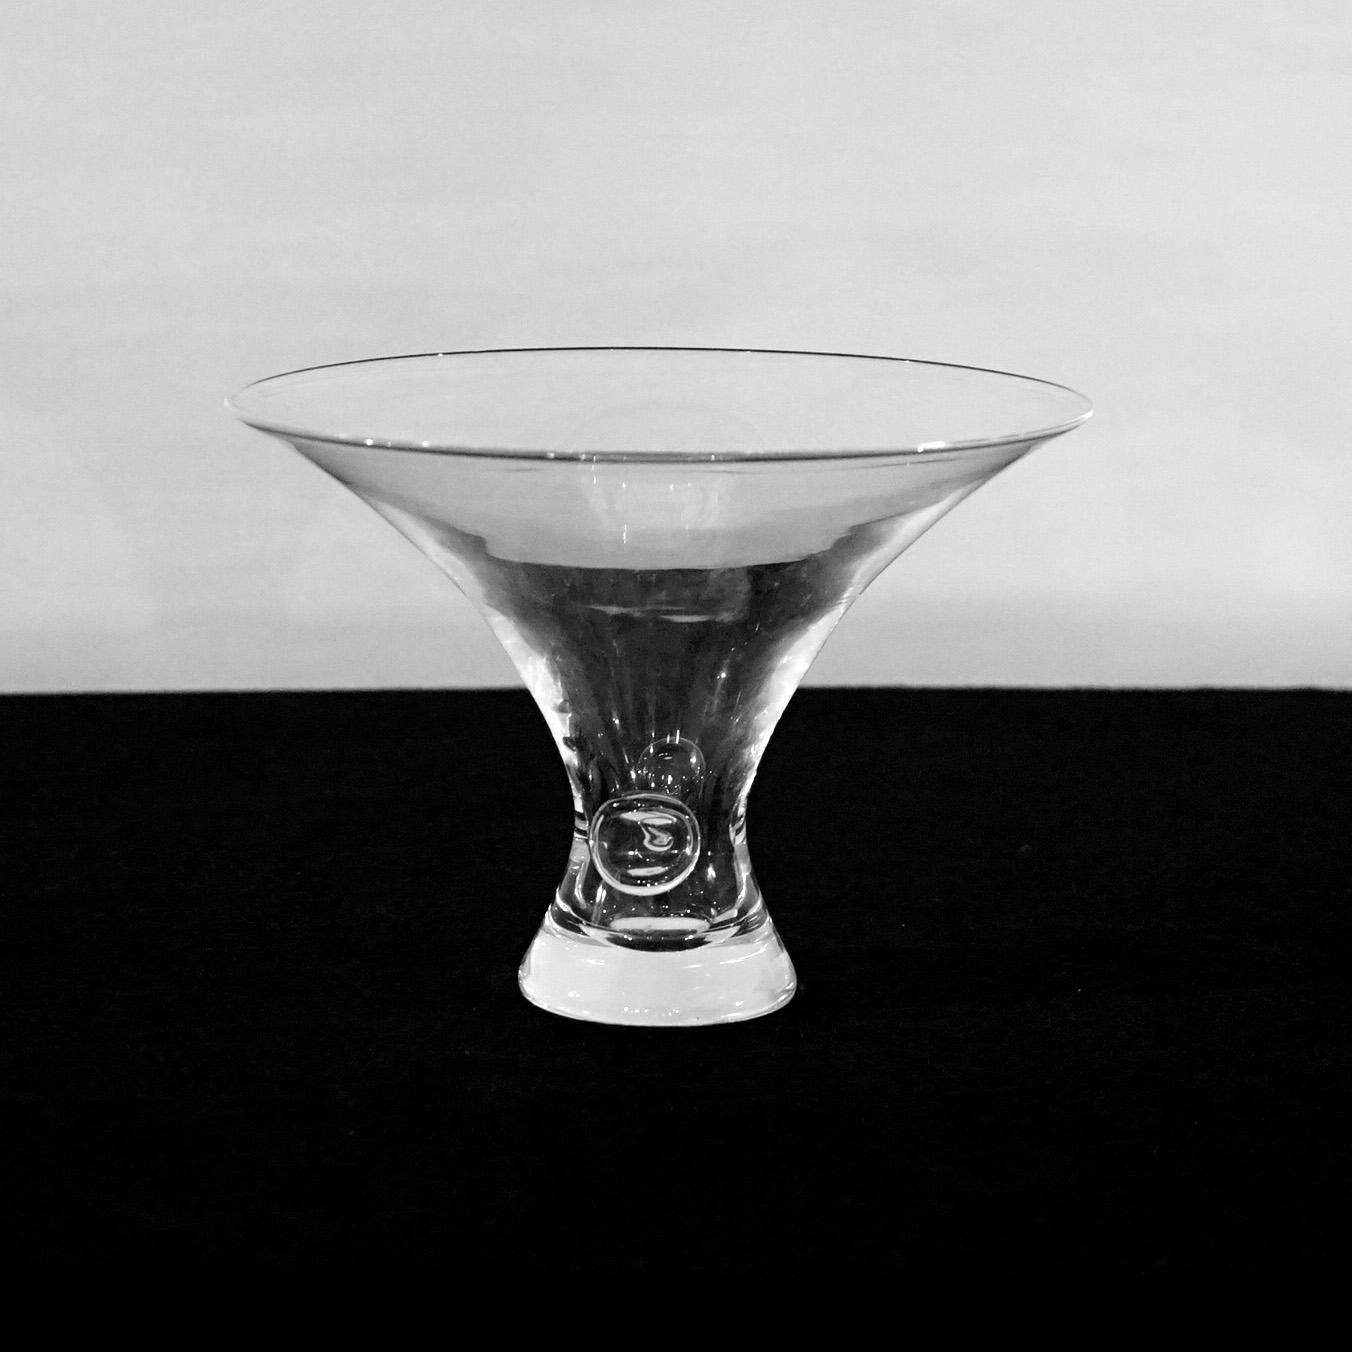 Mid Century Modern Steuben Art Glass Flared Crystal Bowl mit Pinched Base, signiert,  20. Jahrhundert

Maße - 9,5 